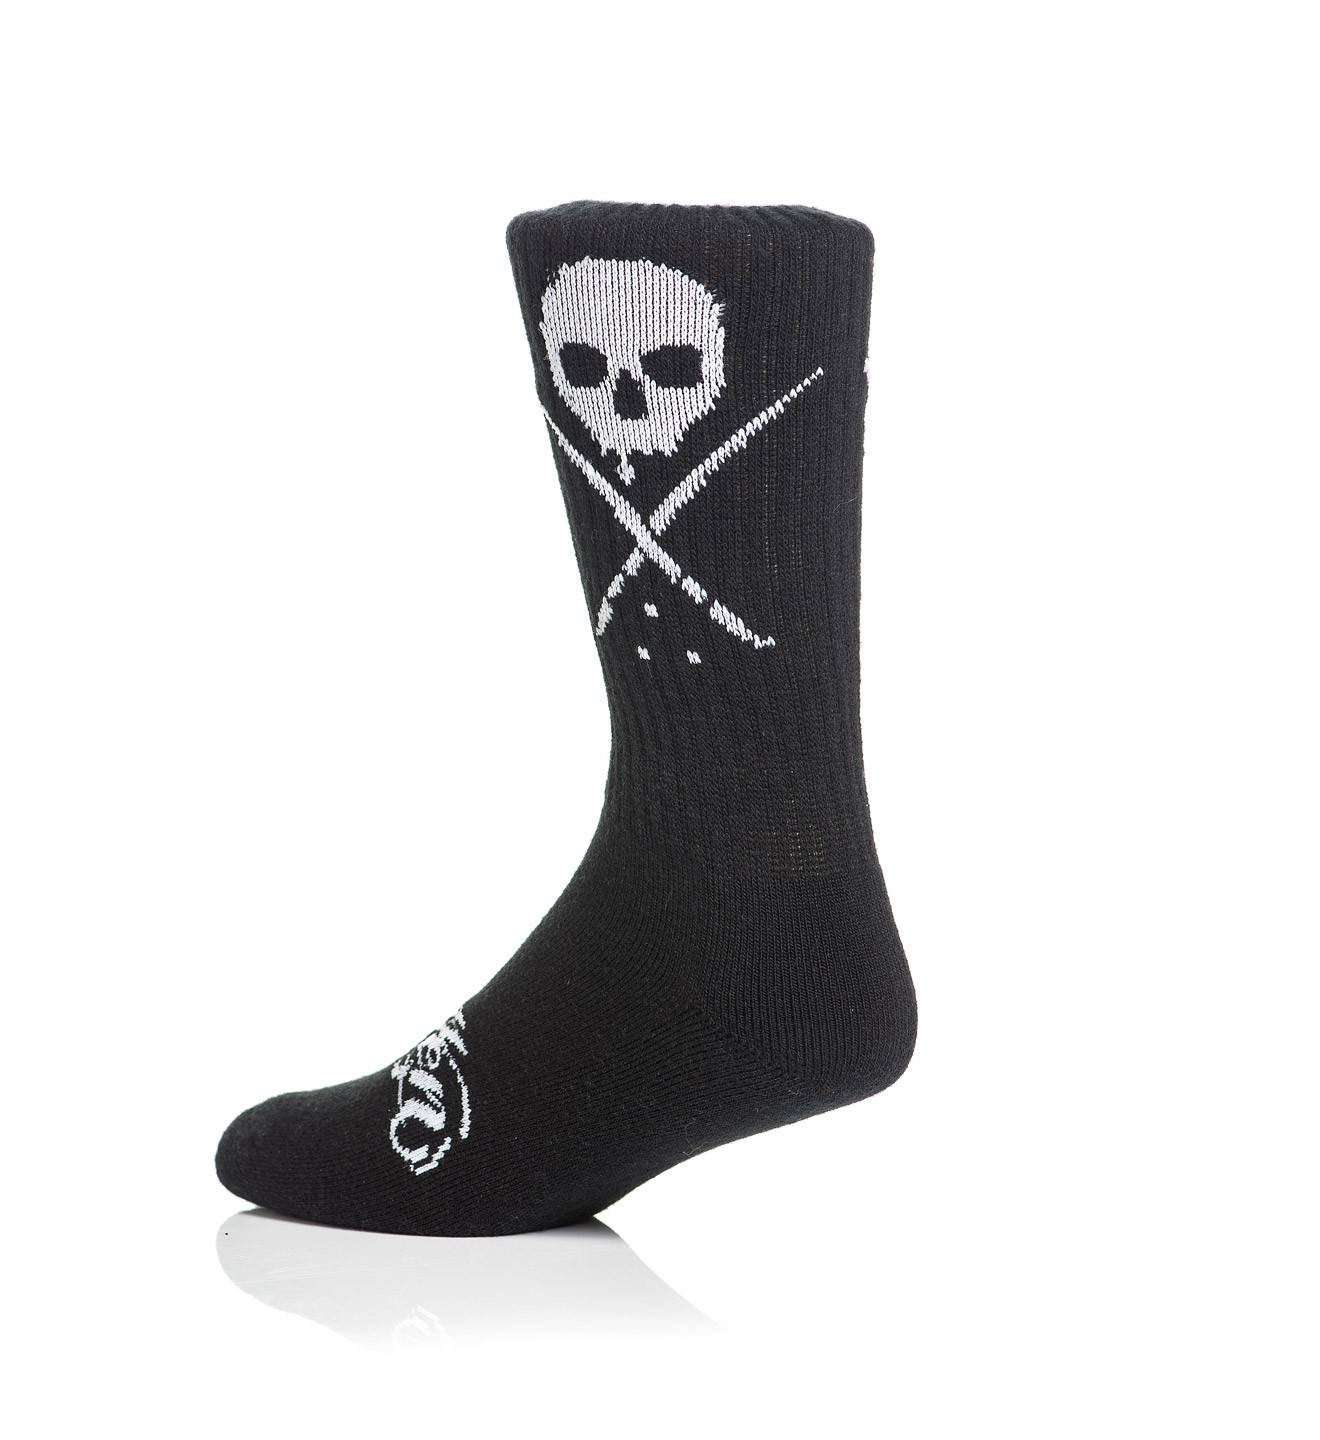 Standard Issue Socks Black/White - Sullen Art Co.